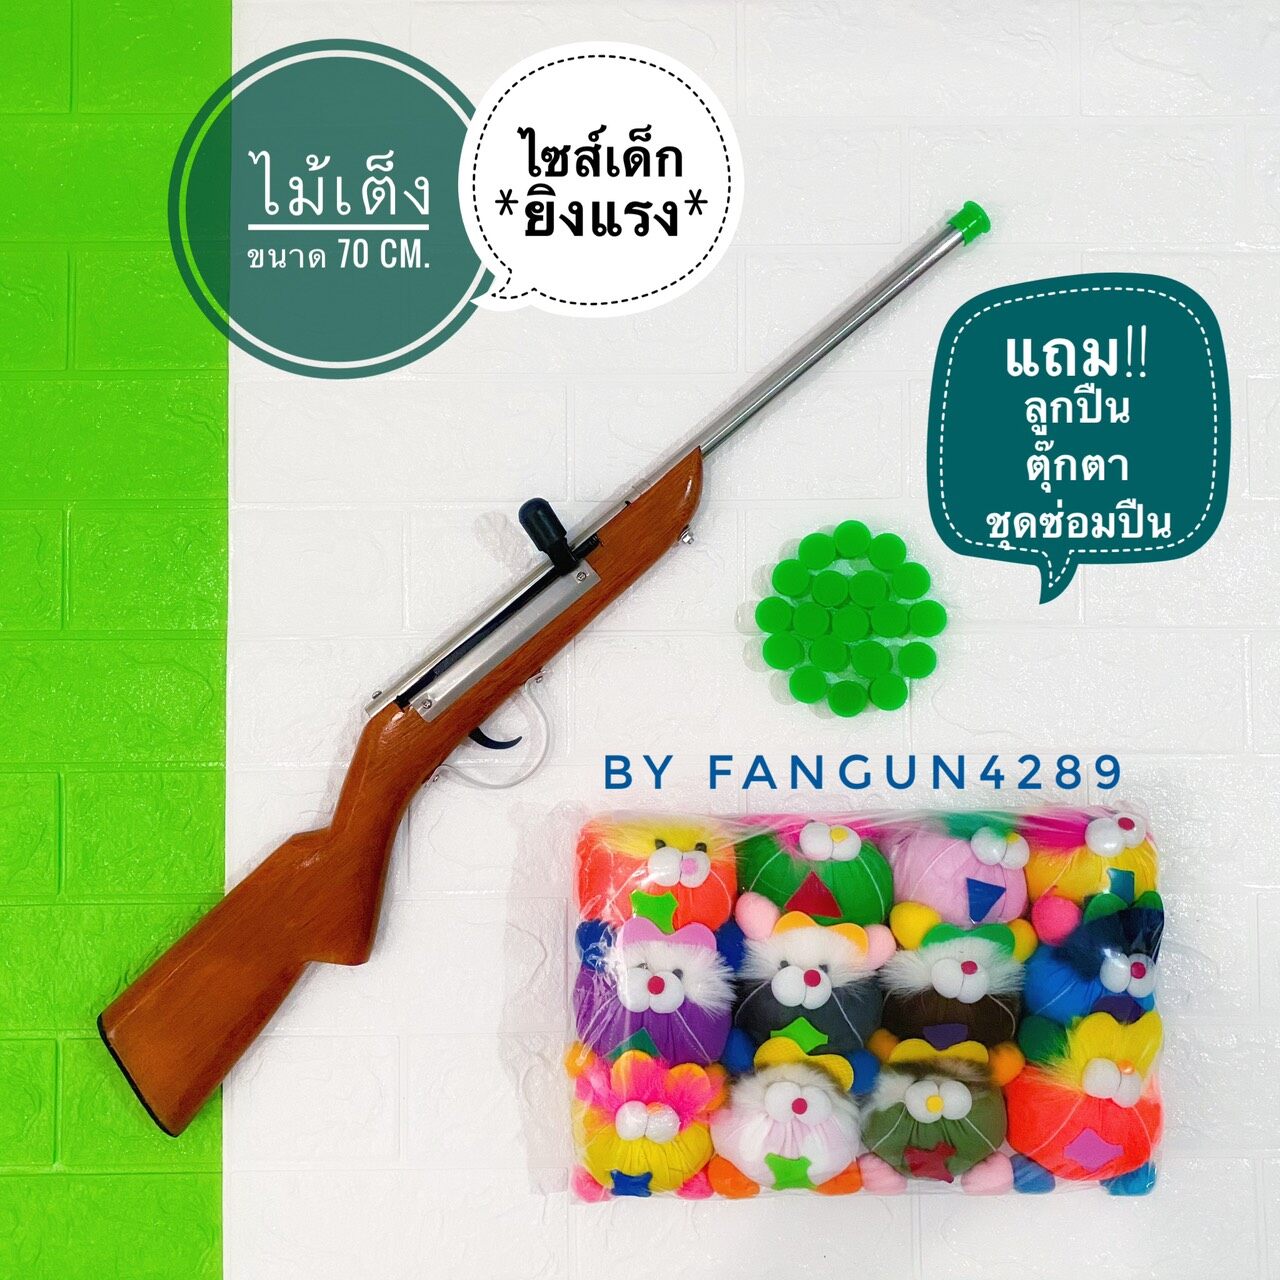 ปืนงานวัด (ไม้เต็งไซส์เด็ก)➕ชุดซ่อมปืน➕ลูกยิง➕ตุ๊กตา ปืนจุกน้ำปลา ปืนงานวัด ปืนยิงตุ๊กตา ของเล่นเด็ก